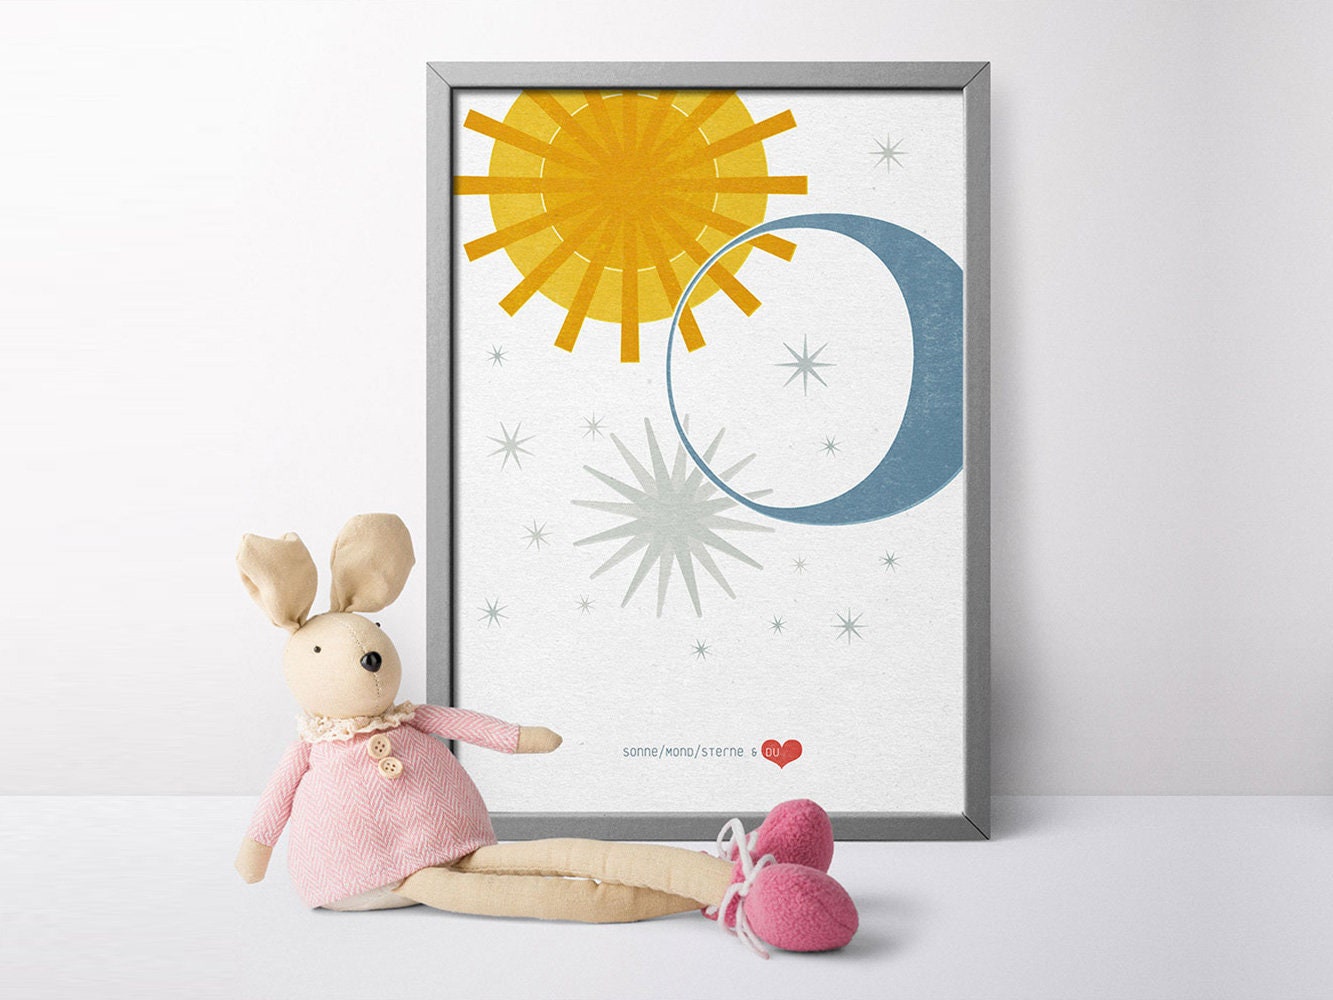 DRUCK ›Sonne, Mond, Sterne & DU - 01‹ / Kinderzimmerbild, Wall Art, Wandbild, Poster, Kunstdruck, Retro, Design, Baby, Hochzeit, Liebe